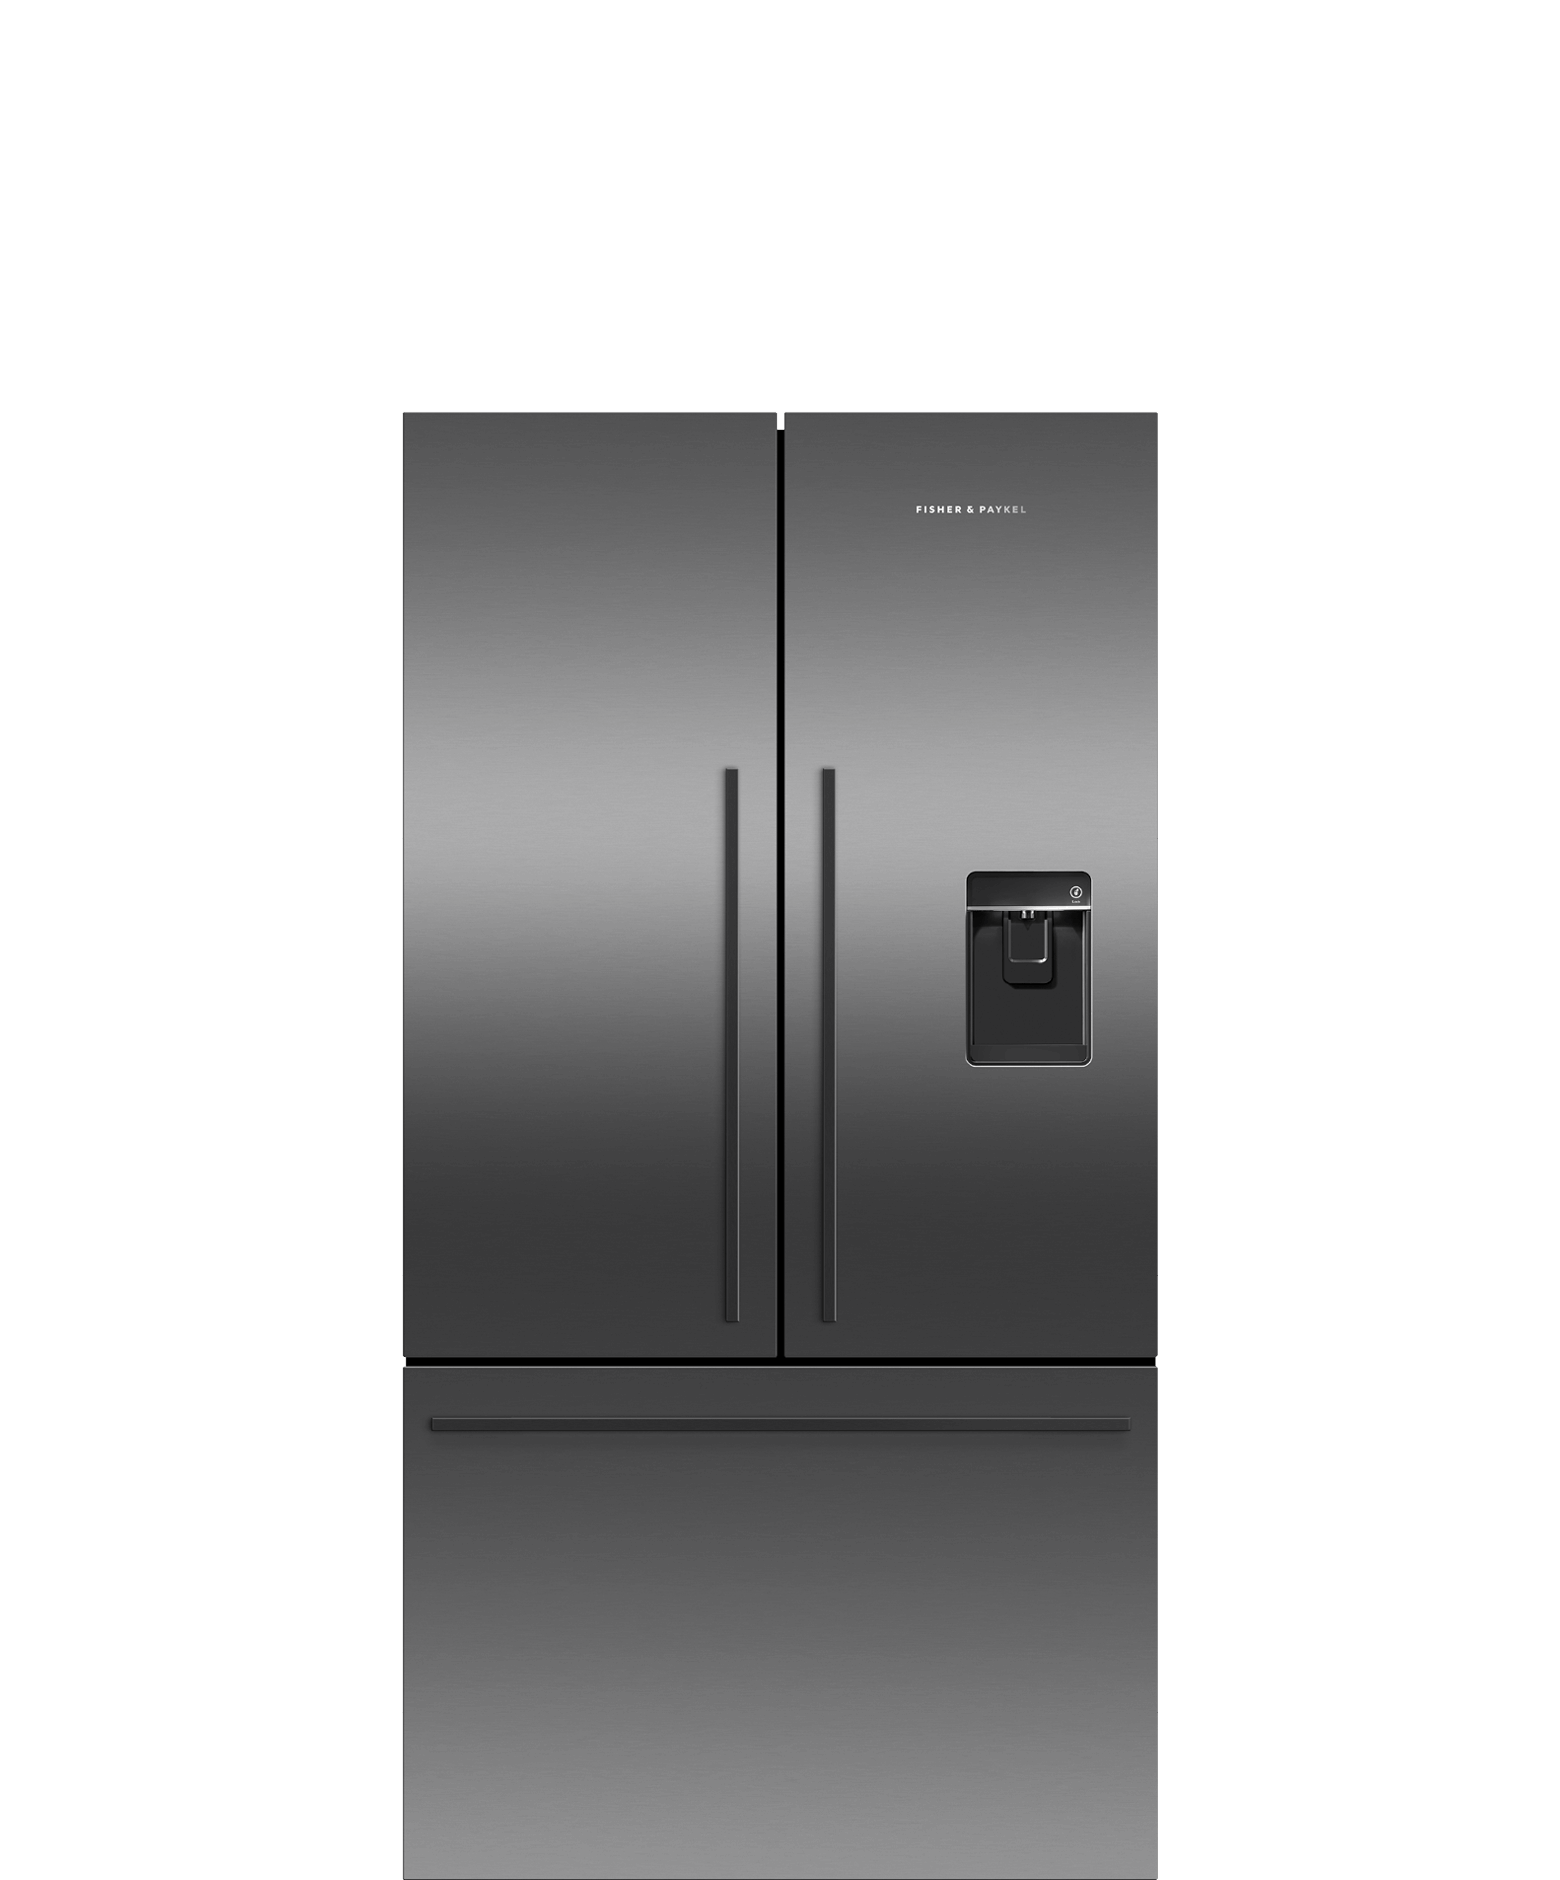 Freestanding French Door Refrigerator Freezer, 90cm, 545L, Ice & Water